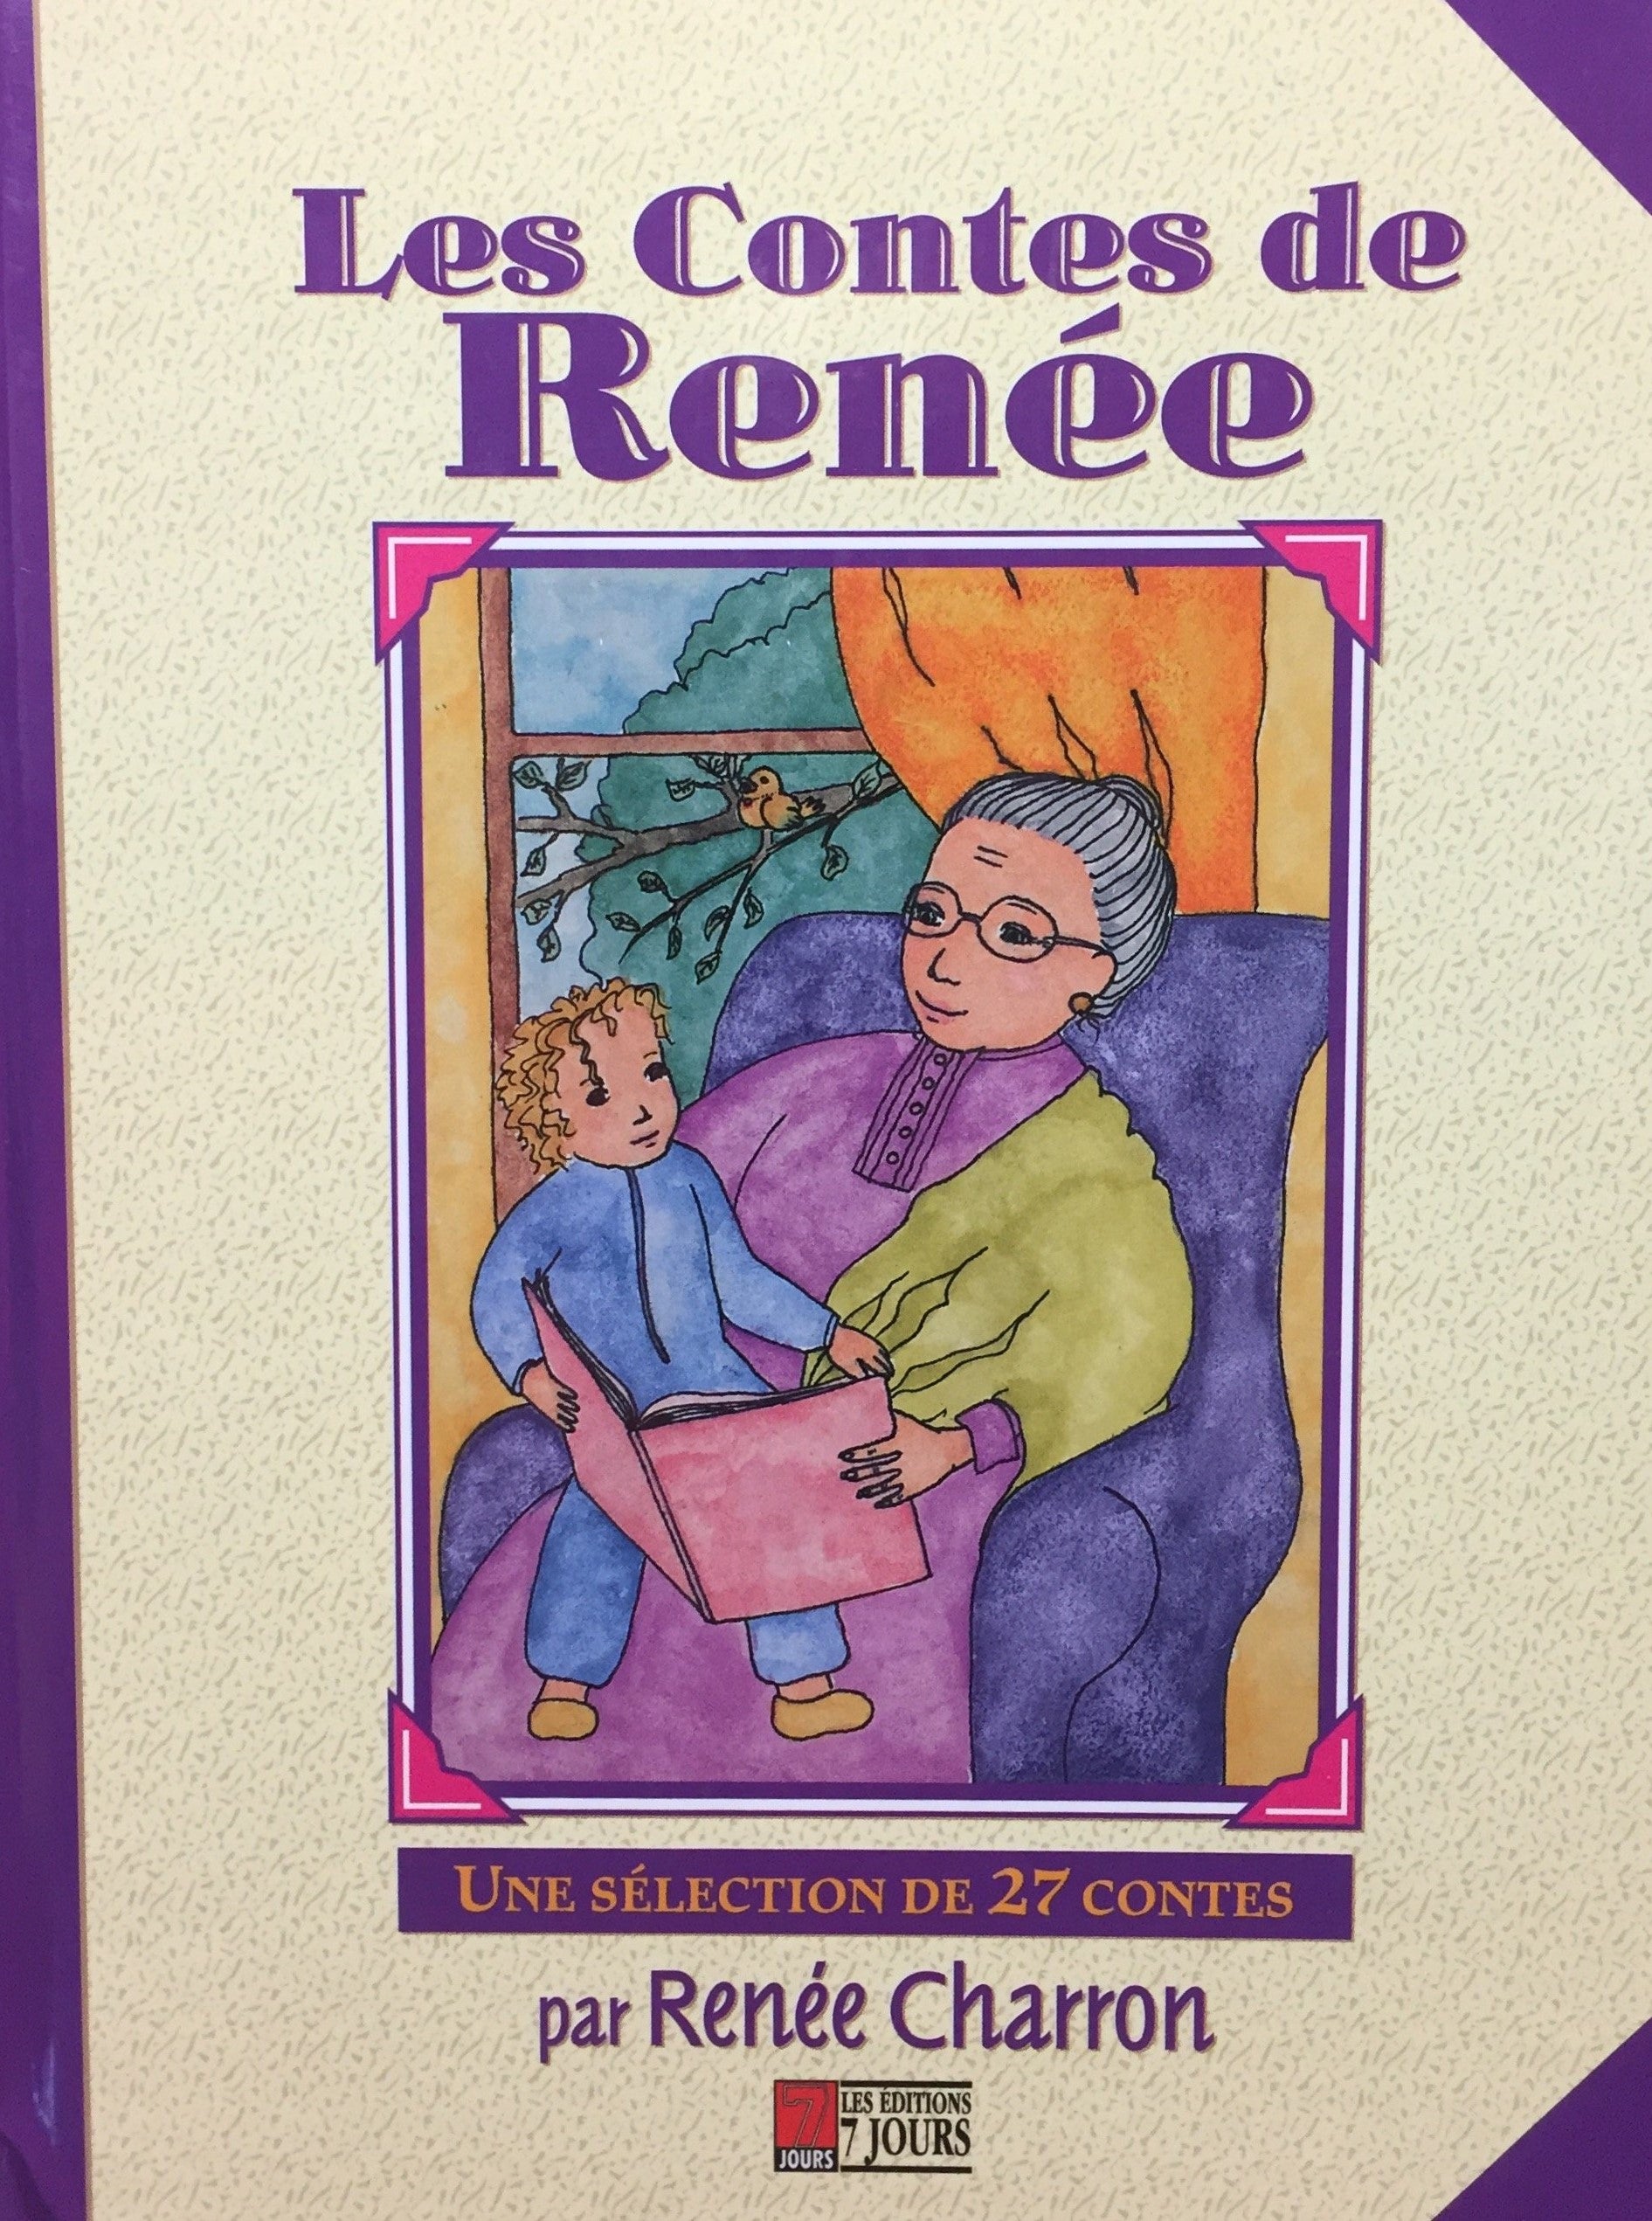 Livre ISBN 2921221209 Les contes de Renée : Une sélection de 27 contes (Renée Charron)